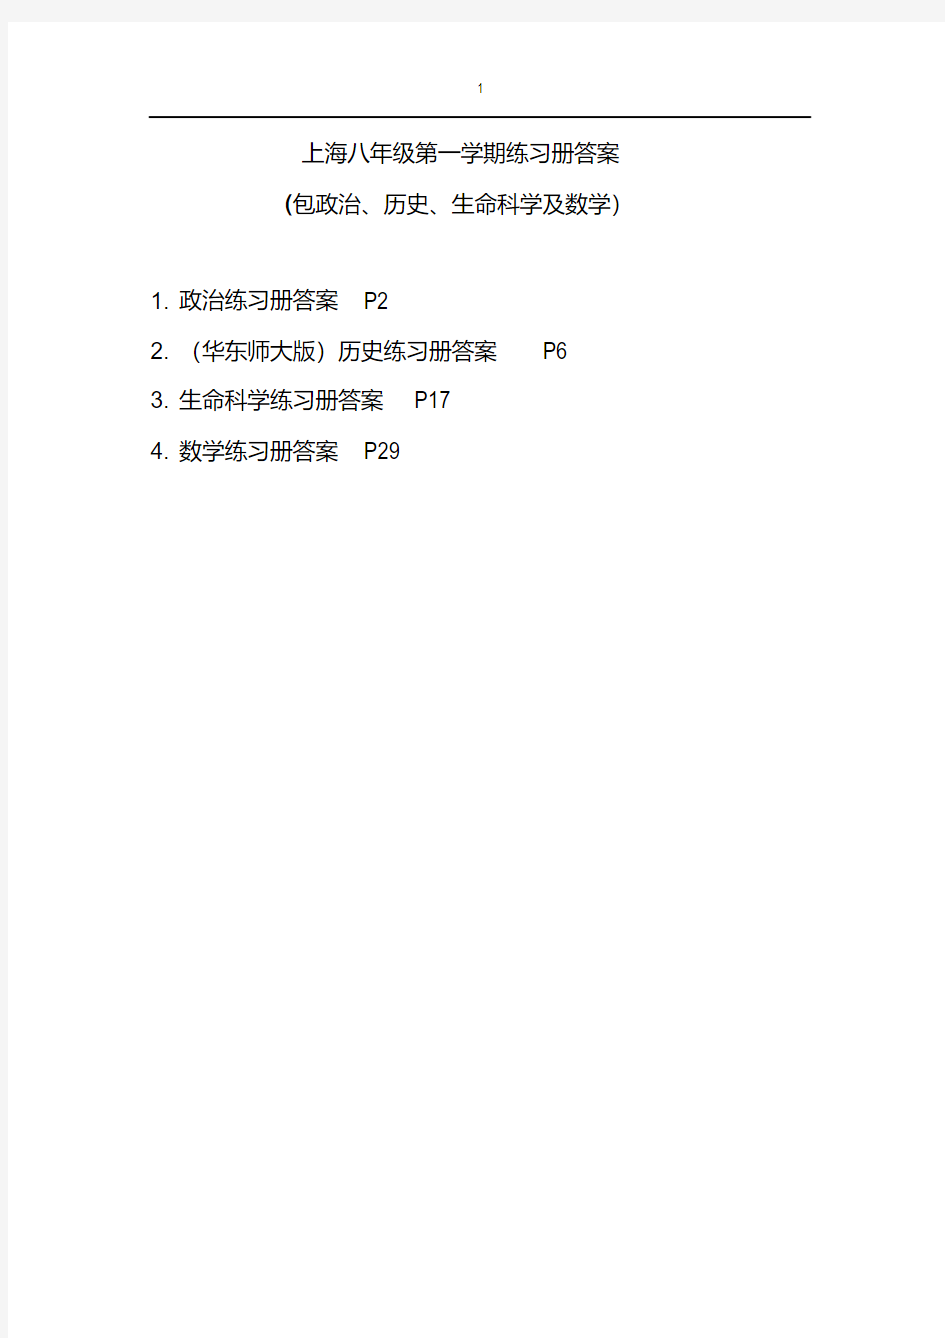 上海八年级第一学期全套练习册答案(包括政治历史生命)DOC